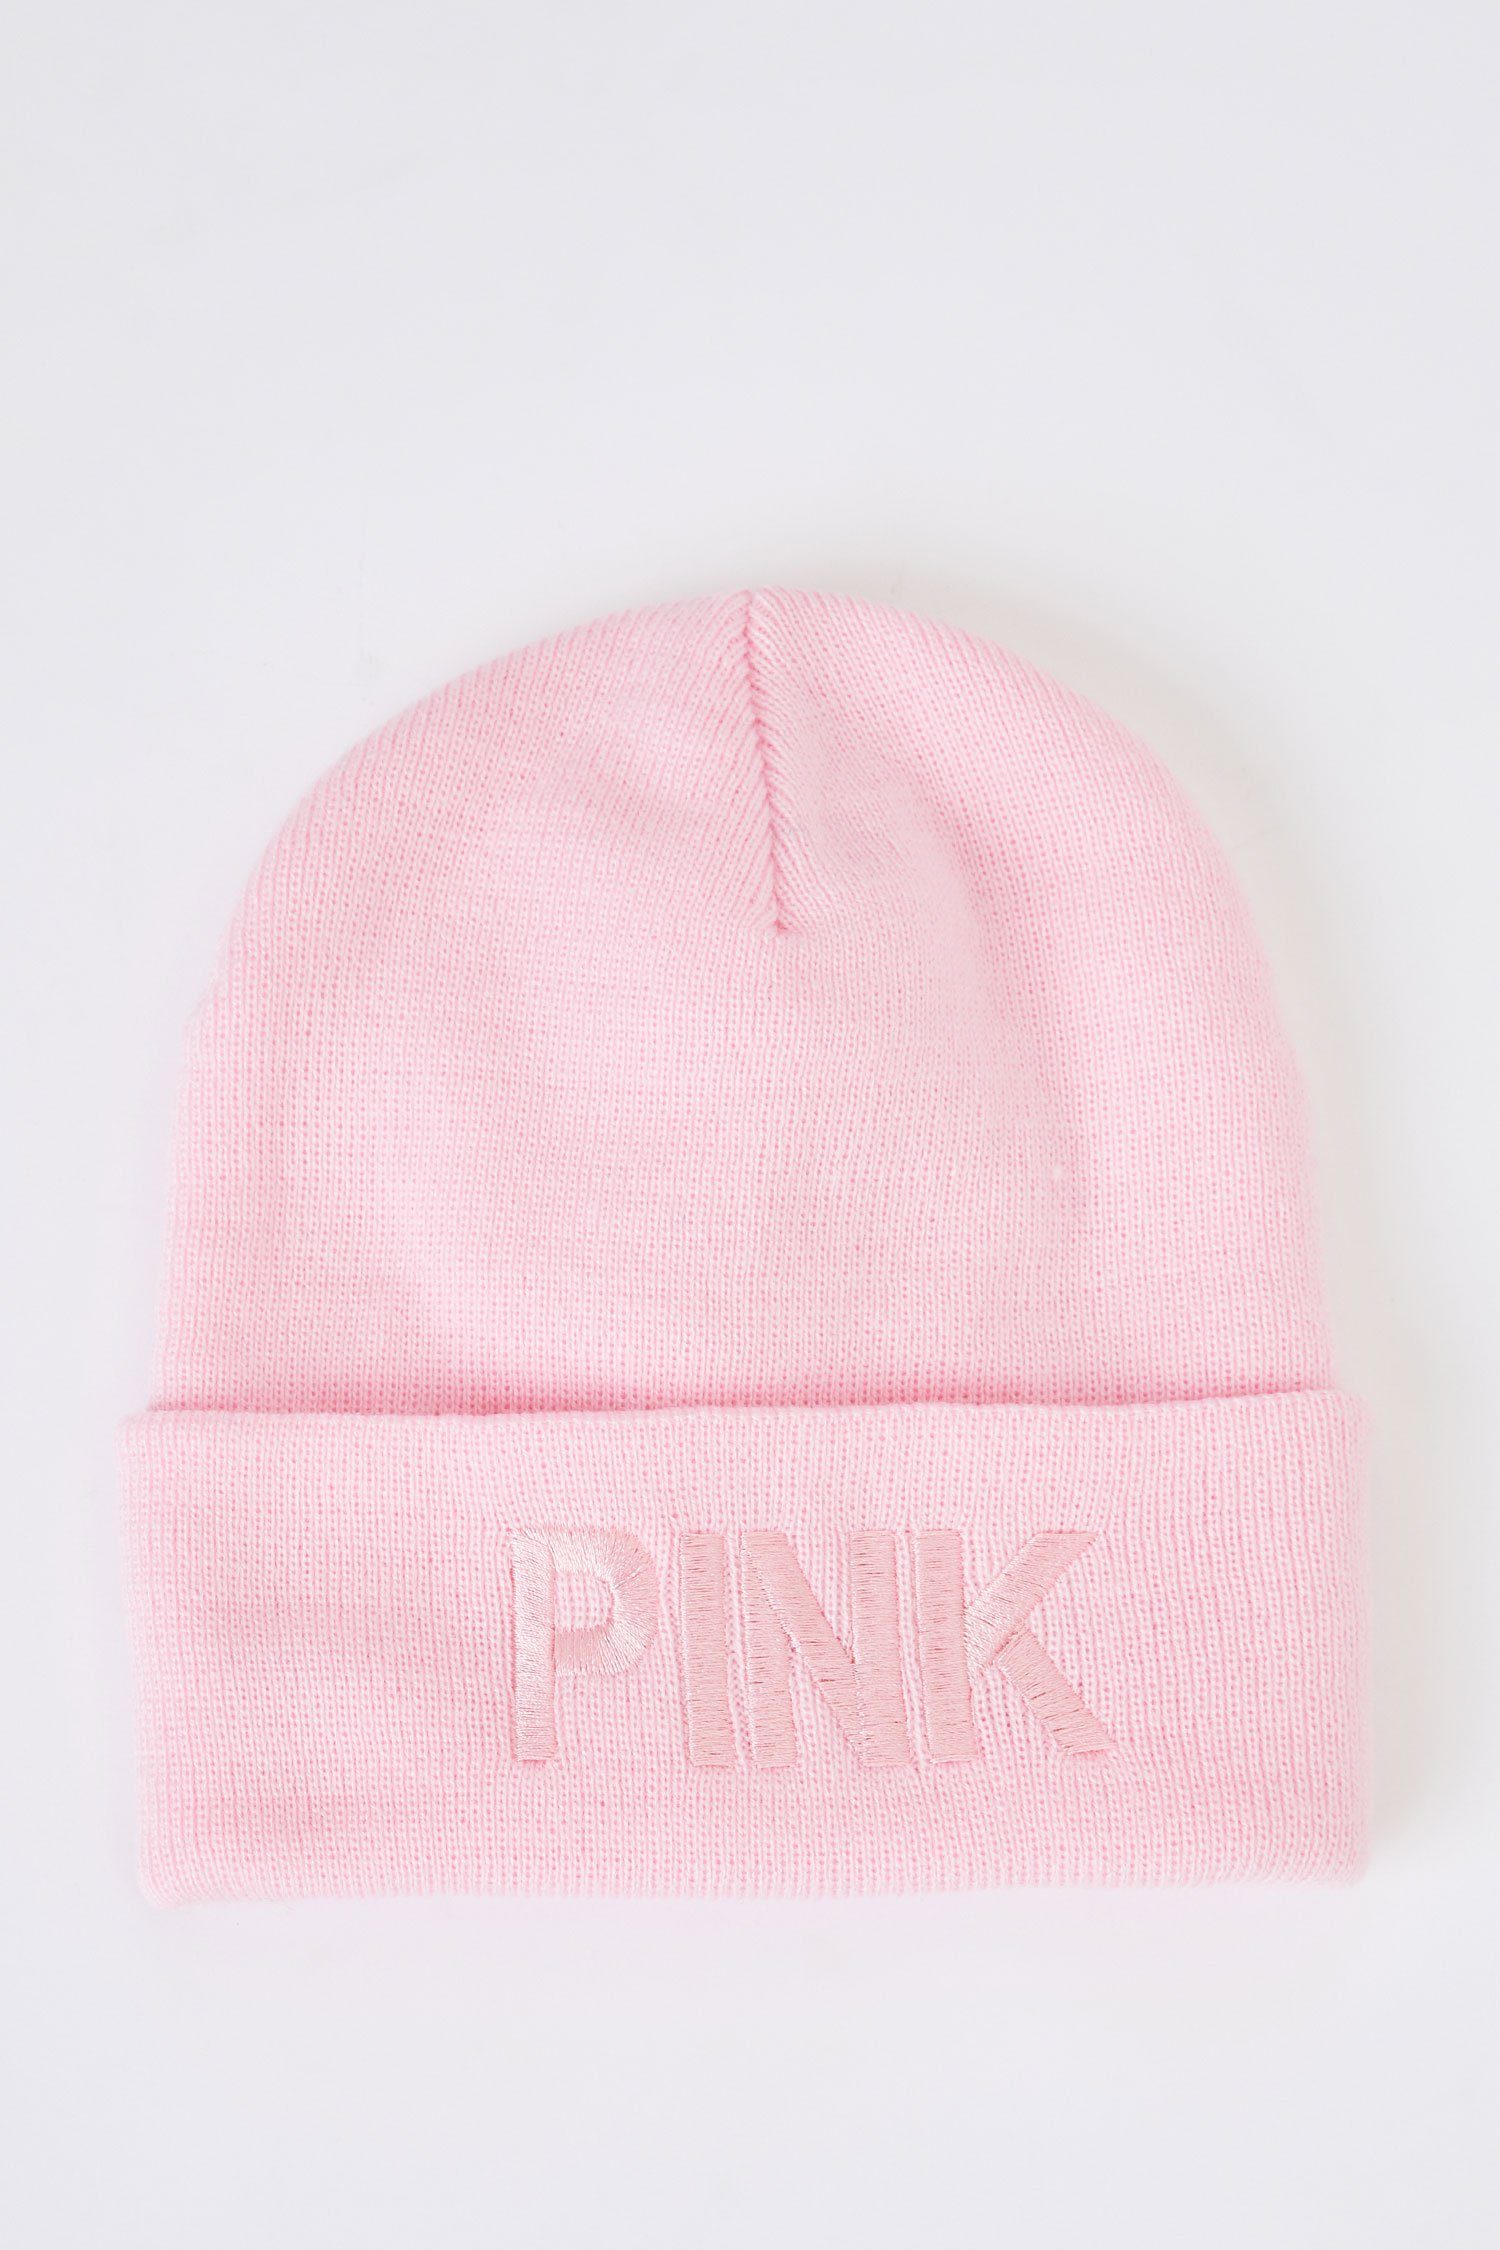 Rosa Mütze online kaufen » Mütze in pink | OTTO